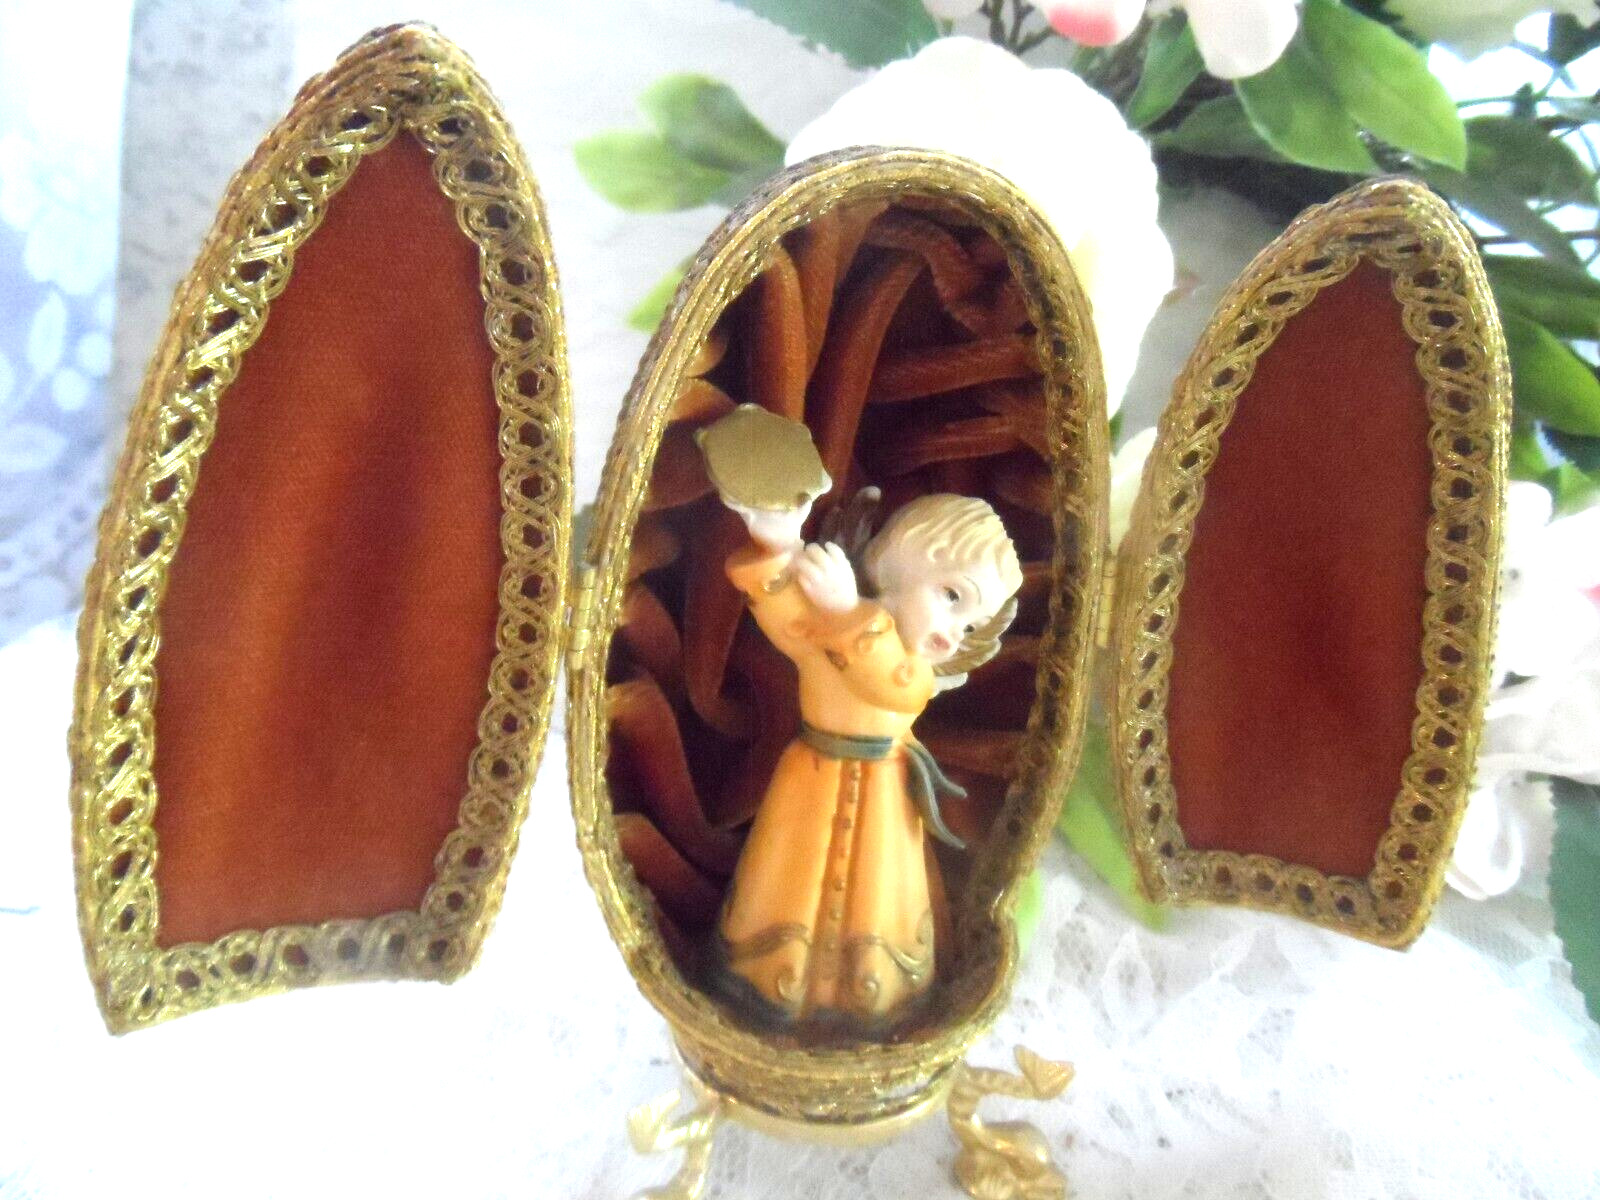 Handmade Vintage  Ornament -REAL GOOSE EGG EMBELLISHED DIORAMA  w/ANGEL FIGURINE